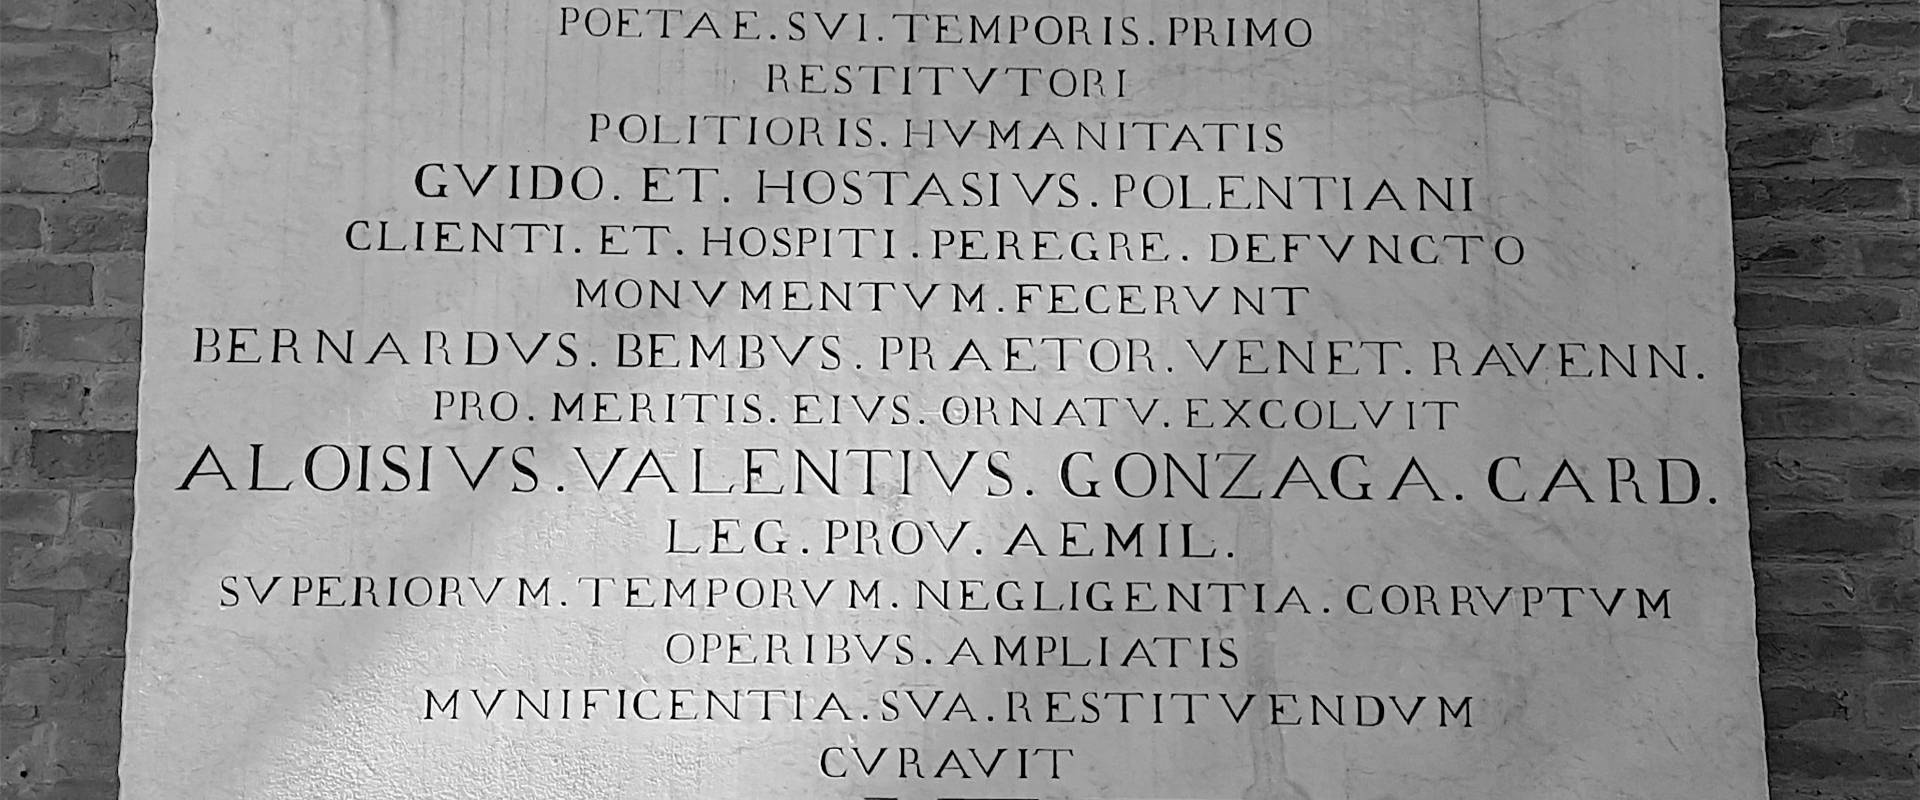 Tomba di Dante iscrizione photo by Opi1010